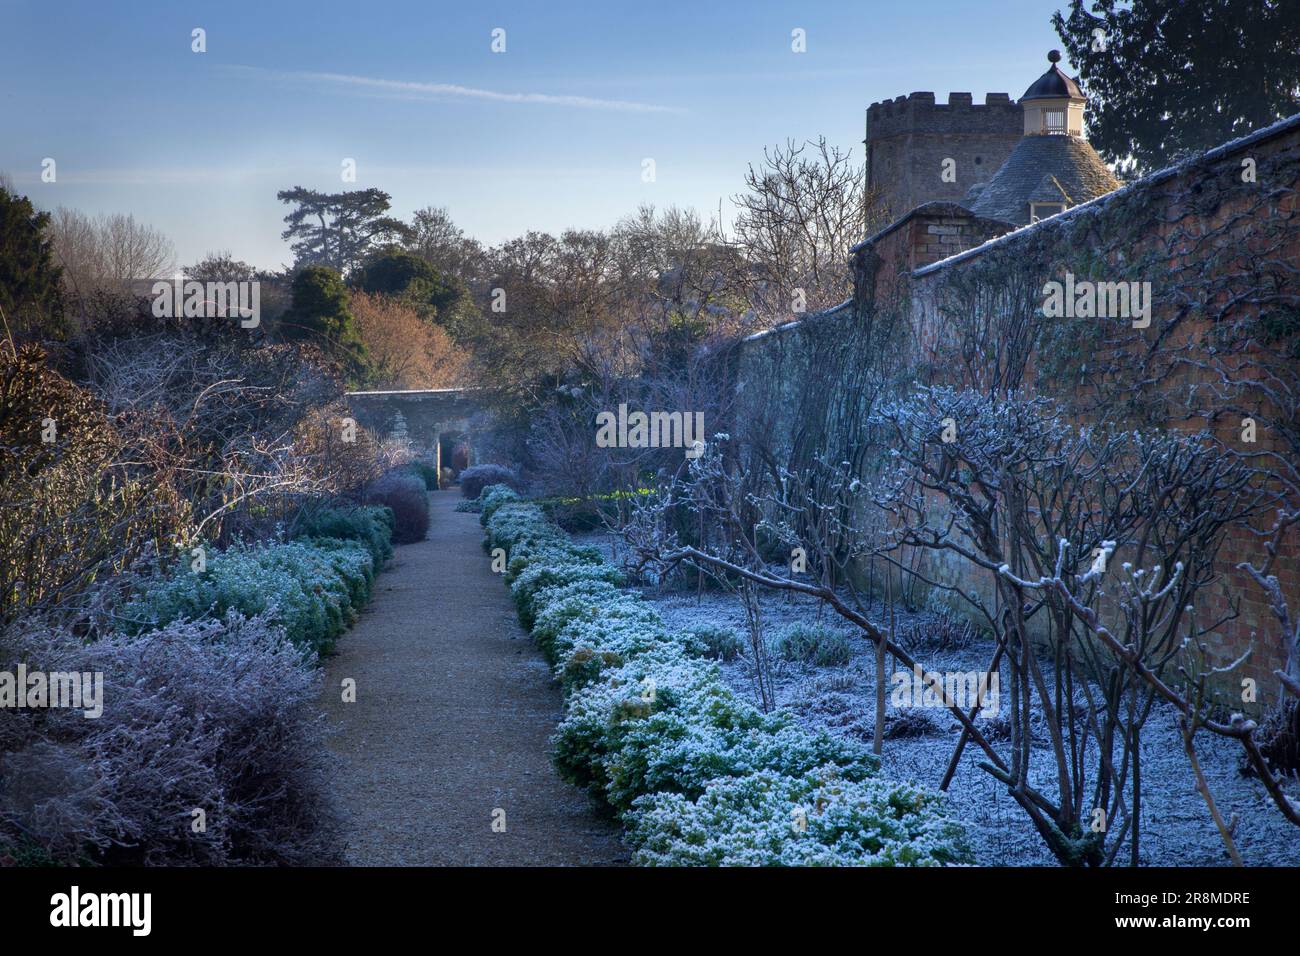 Rousham House and Gardens, Oxfordshire,England Stock Photo